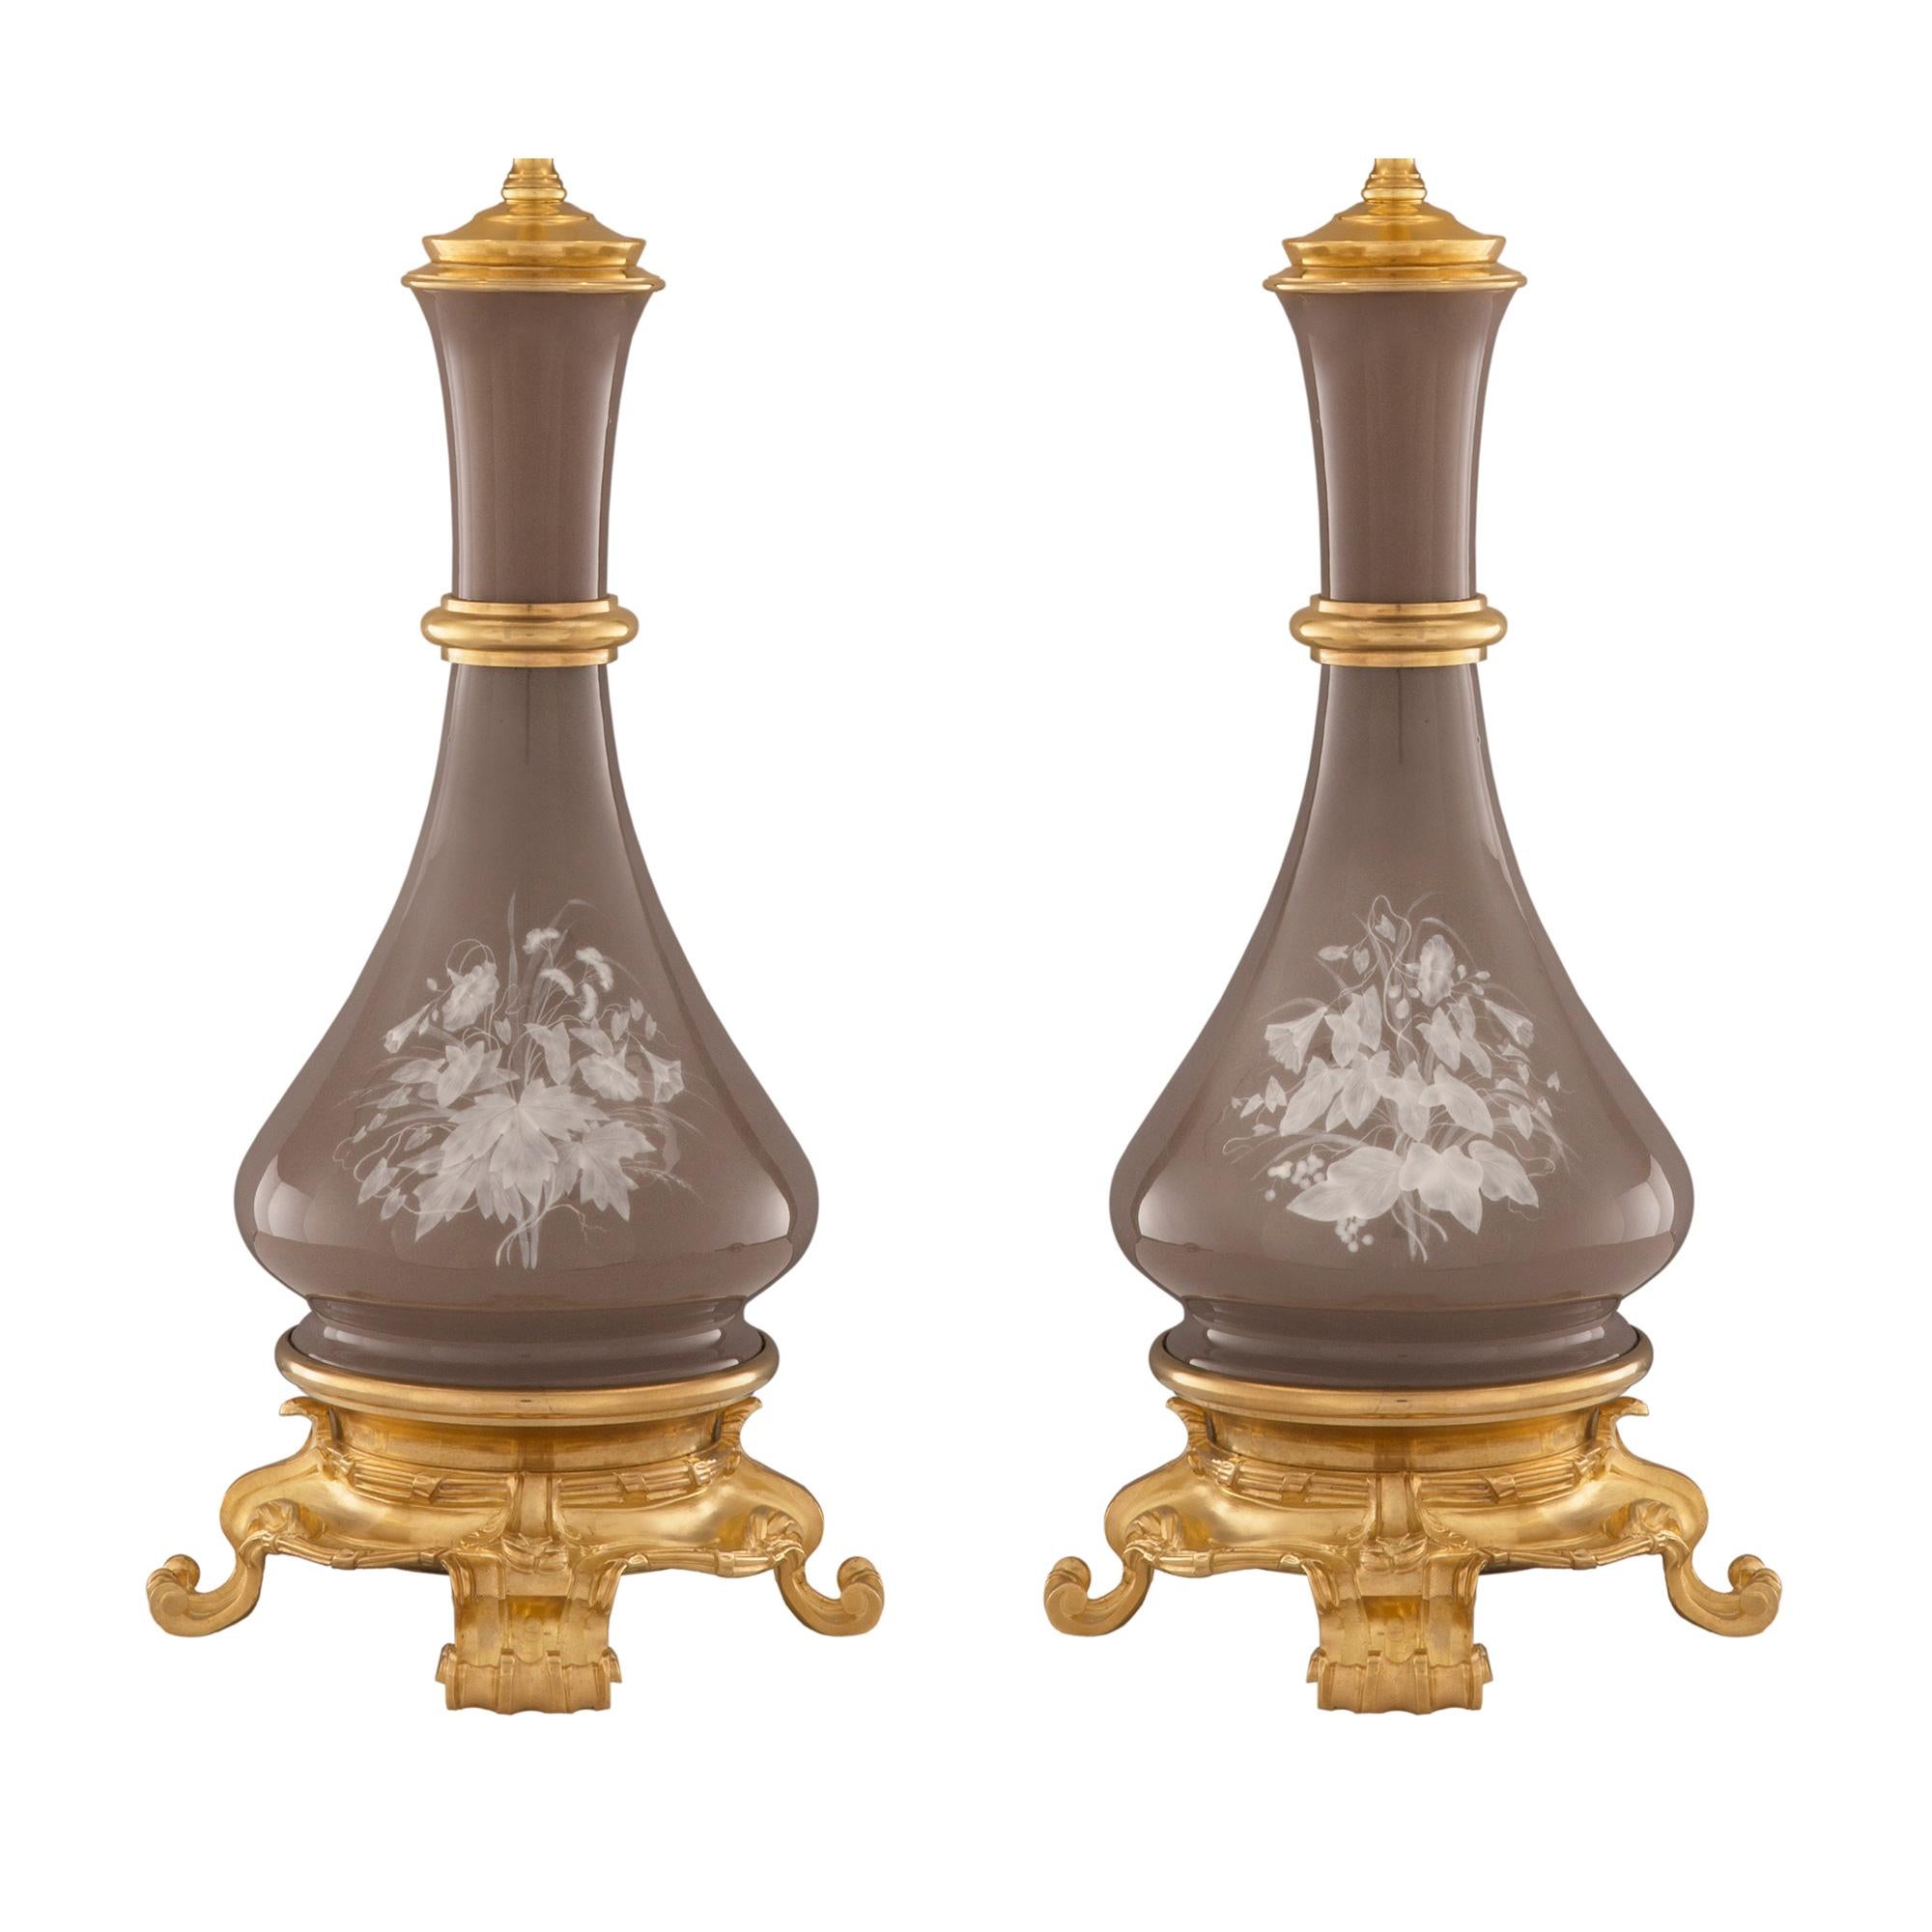 Ein sehr elegantes Paar französischer Pâte sur Pâte-Lampen aus Porzellan und Ormolu aus dem 19. Jede Lampe steht auf einem feinen Ormolu-Sockel mit sehr dekorativen, verschnörkelten Blattfüßen und einem schönen gehämmerten Design. Oberhalb des